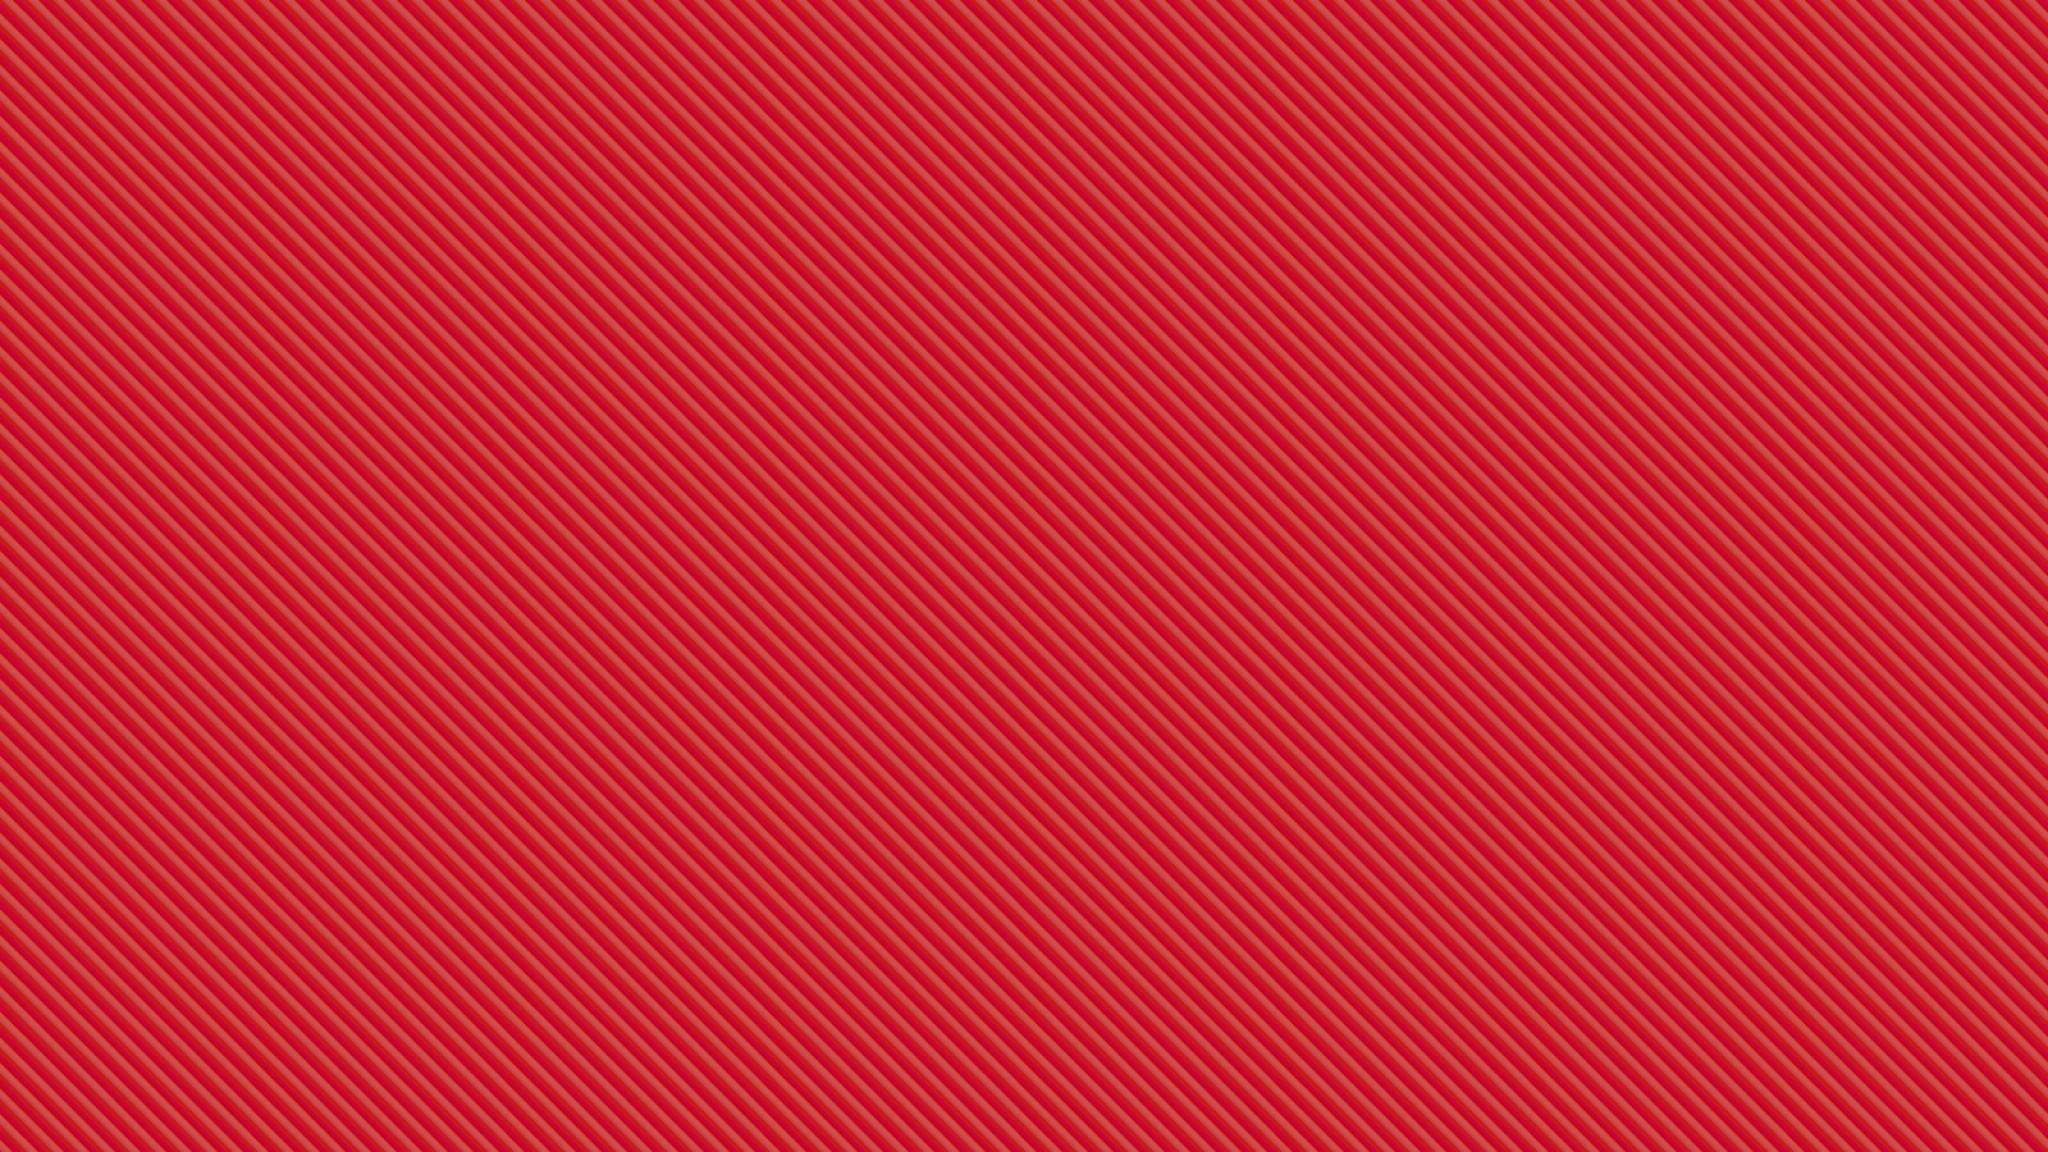 Hình nền đỏ đẹp: Hình nền đỏ là một cách tuyệt vời để trang trí cho máy tính của bạn, mang đến cho bạn sự tươi sáng và năng động. Hình nền đỏ đẹp sẽ tạo nên sự khác biệt và gây ấn tượng với bất kỳ ai nhìn vào. Hãy xem hình ảnh liên quan để tìm về những hình nền đẹp nhất cho máy tính của bạn.